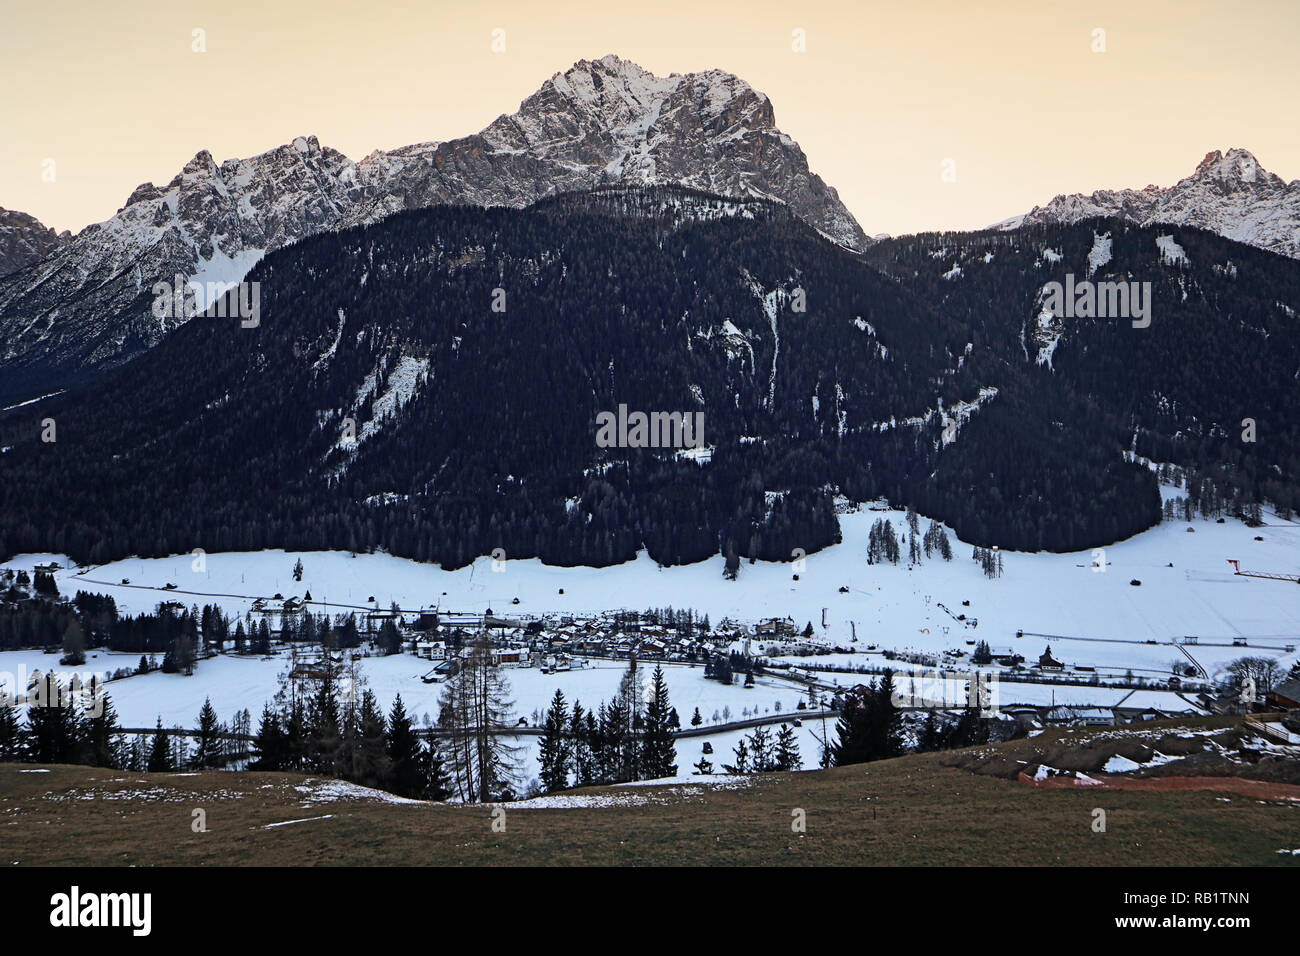 L'Italia, Dolomiti di Sesto (Dolomiti di Sesto), veduta aerea della Val Pusteria, con il villaggio di Sesto e le Dolomiti in inverno Foto Stock